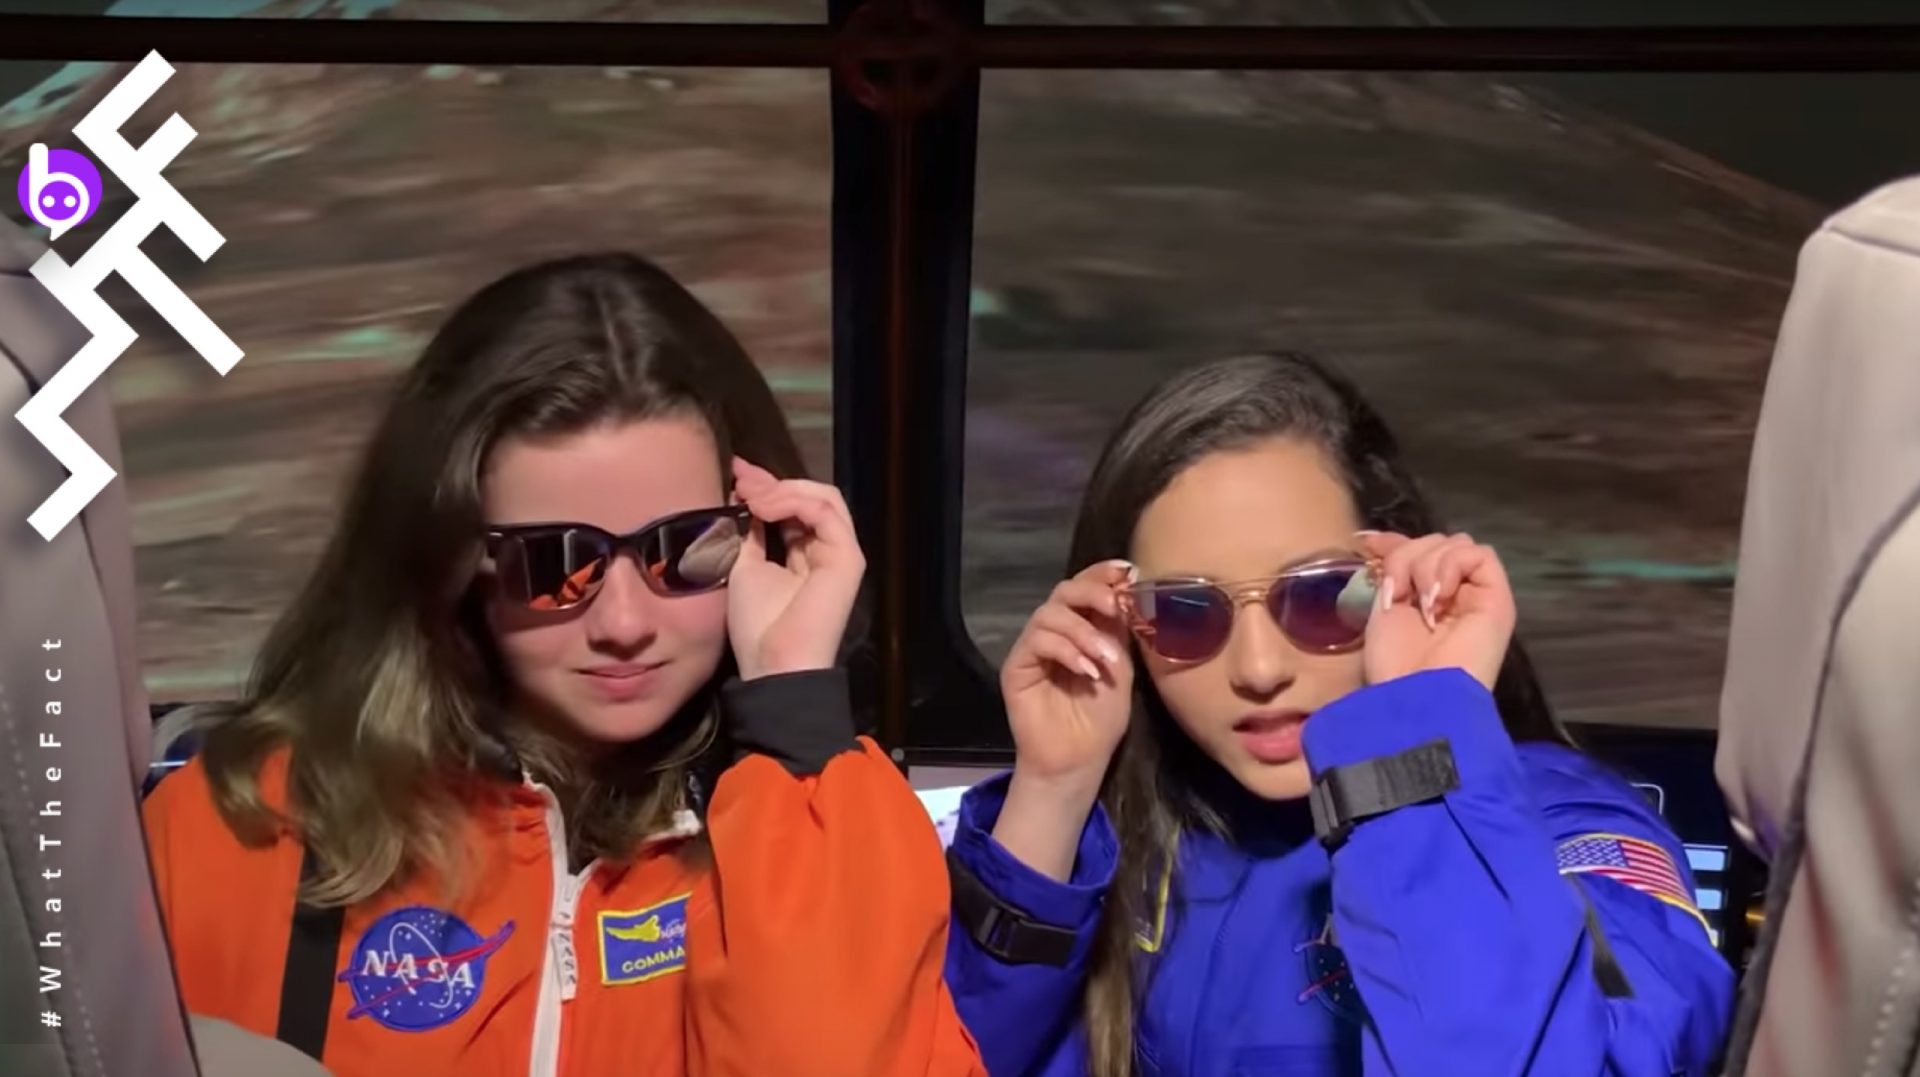 อย่างฮา!! เมื่อเด็กฝึกงานนาซ่าเอาเพลง “NASA” ของ “Ariana Grande” มาทำวิดีโอรีมิกซ์ซะ